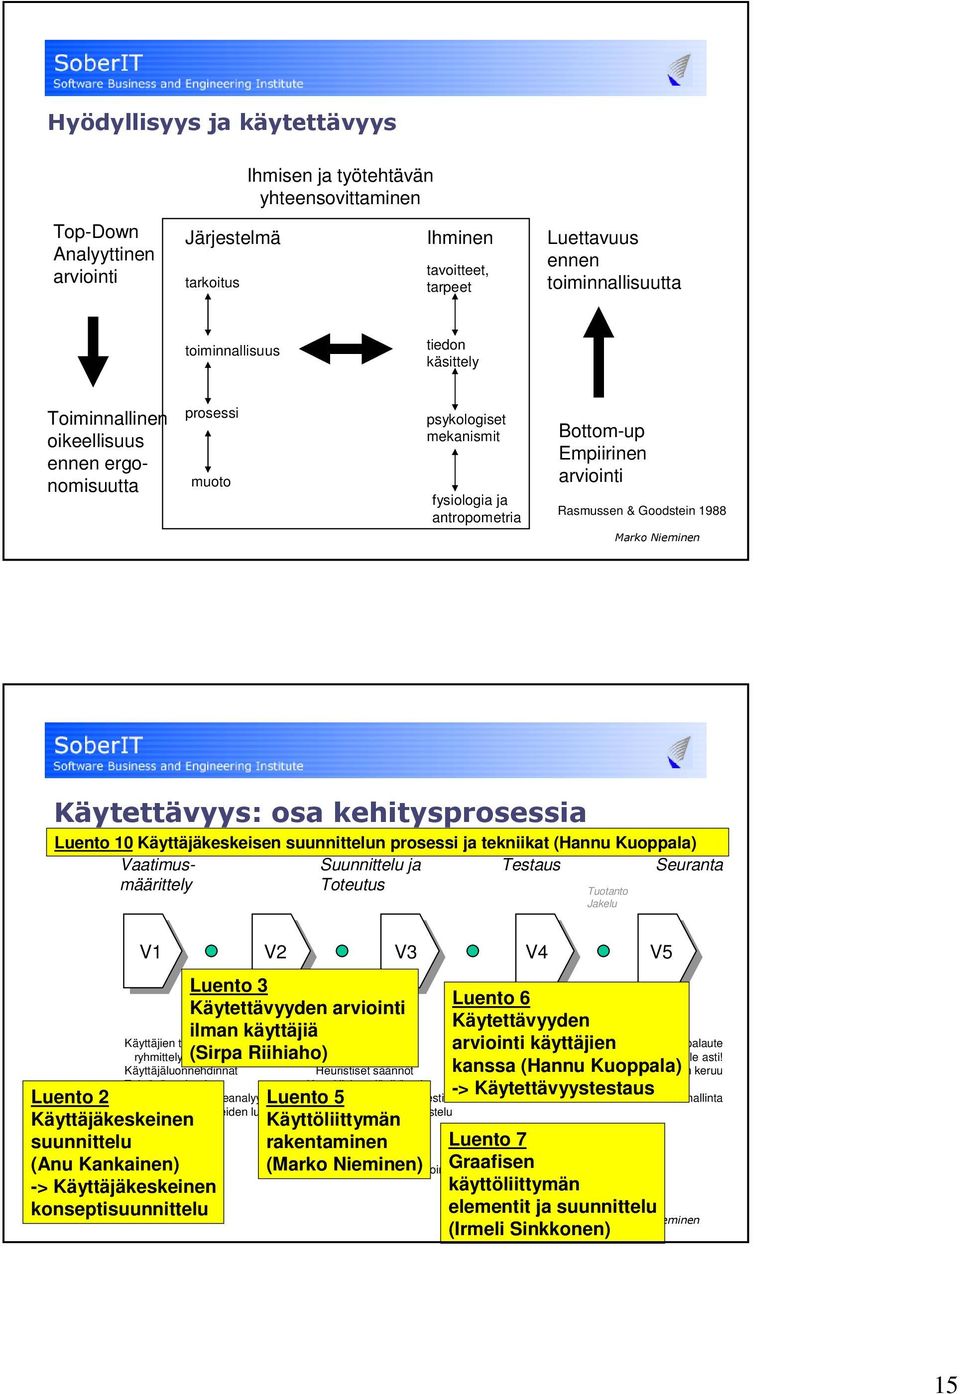 Käyttäjäkeskeisen suunnittelun prosessi ja tekniikat (Hannu Kuoppala) Vaatimusmäärittely Suunnittelu ja Toteutus Testaus Tuotanto Jakelu Seuranta V1 V2 V3 V4 V5 Käyttäjien tunnistaminen ja